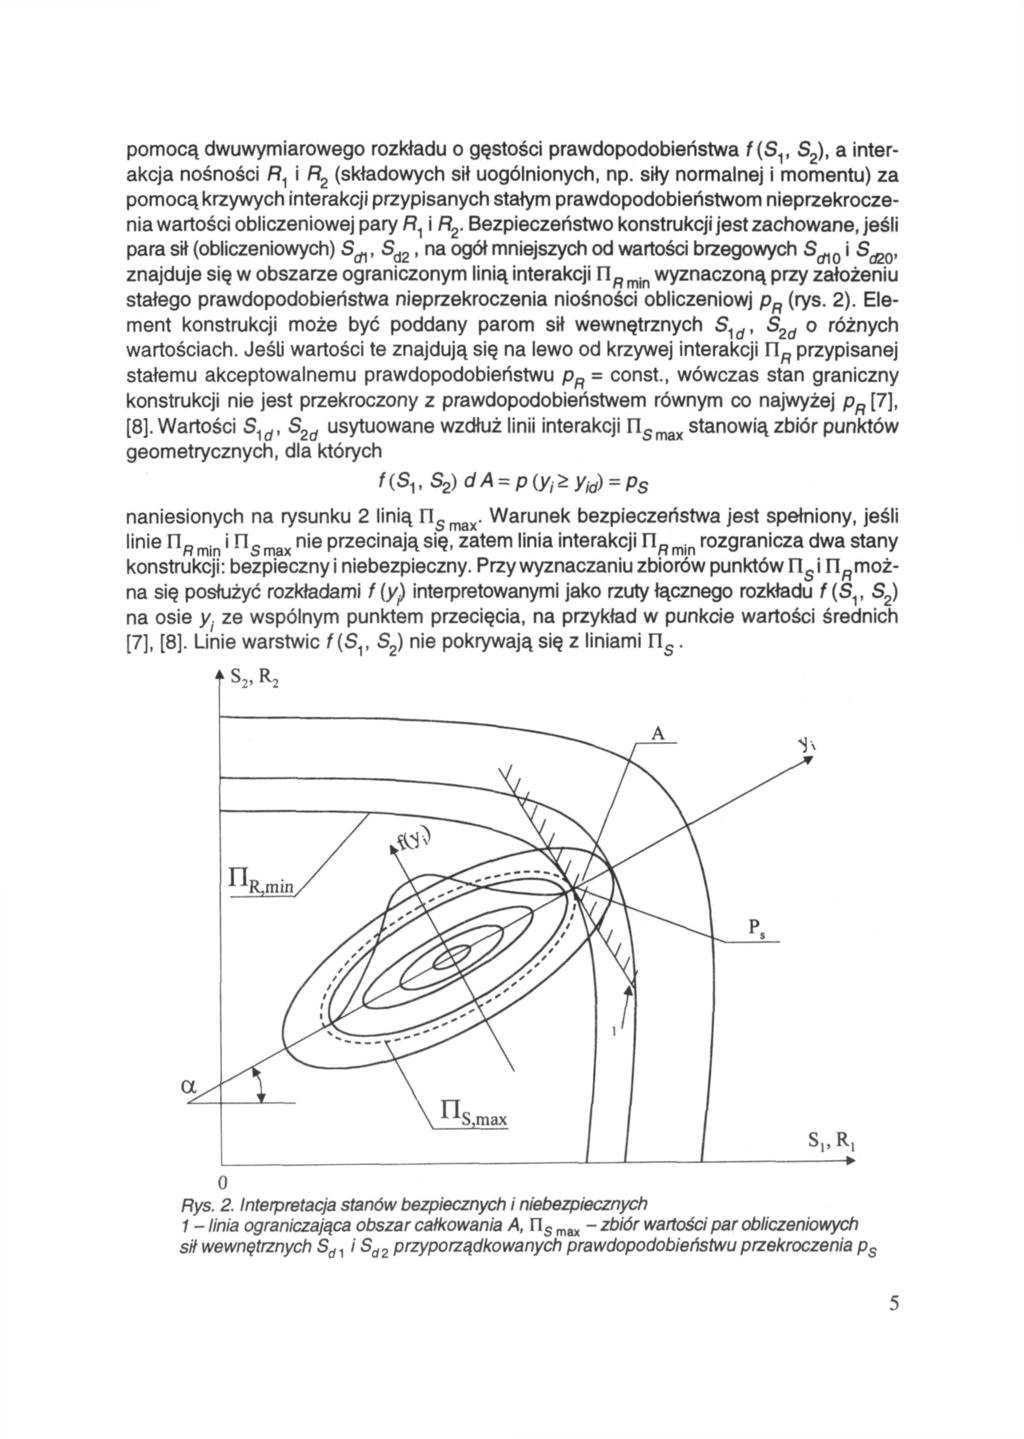 pomocą dwuwymiarowego rozkładu o gęstości prawdopodobieństwa a interakcja nośności (składowych sił uogólnionych, np.